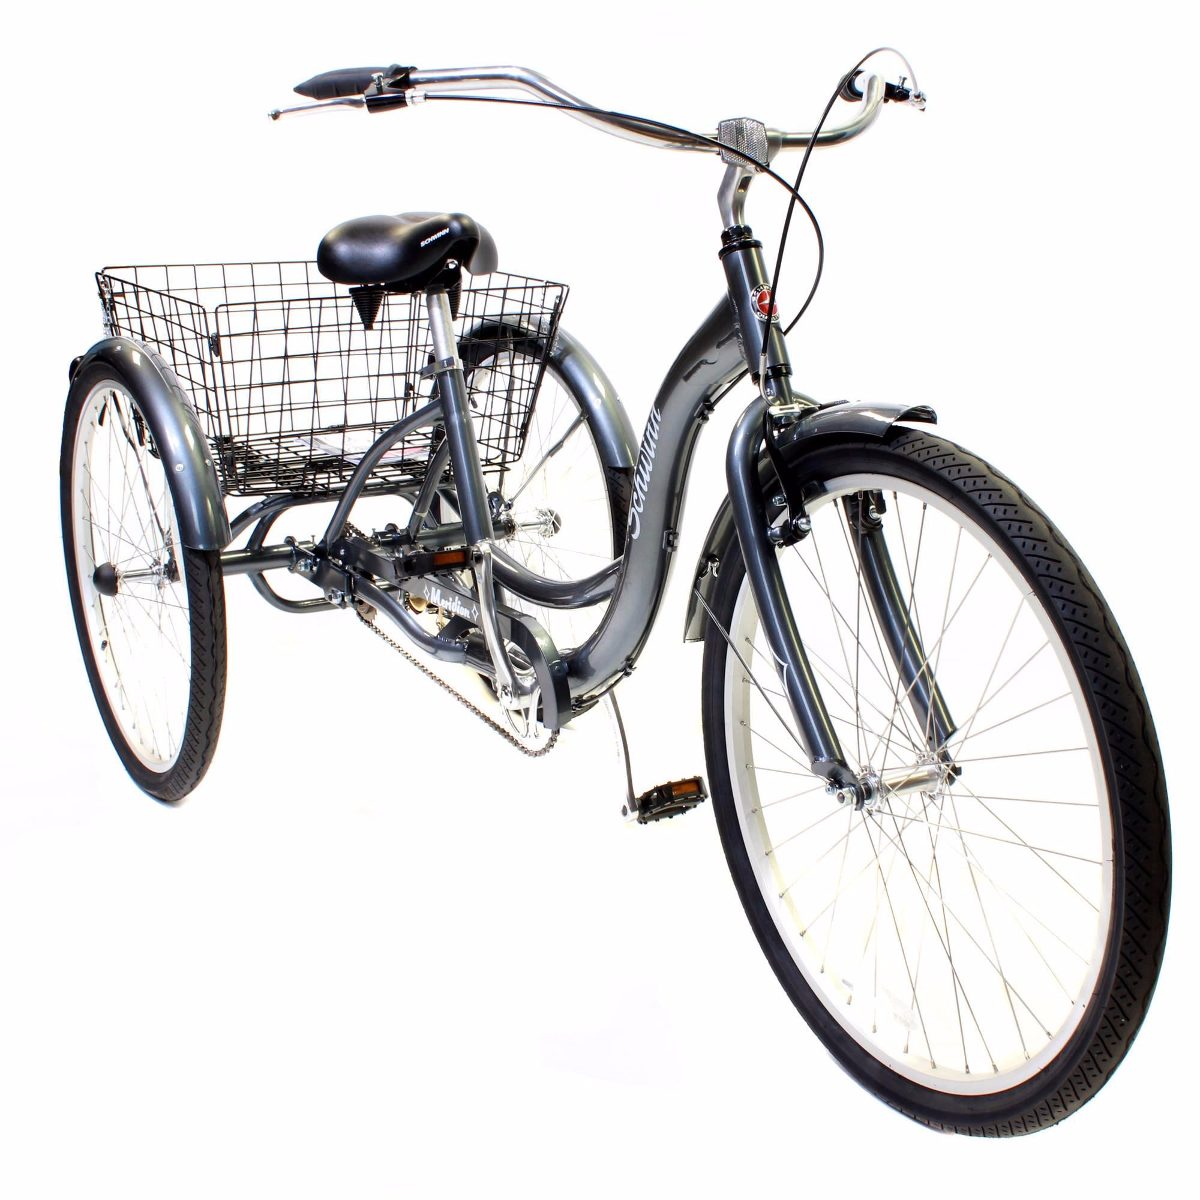 Bikes bikes трехколесный. Велосипед Швинн Schwinn трехколесный. Schwinn Tricycle 26. Schwinn трехколесный велосипед взрослый. Круизер Schwinn Meridian трехколесный велосипед.